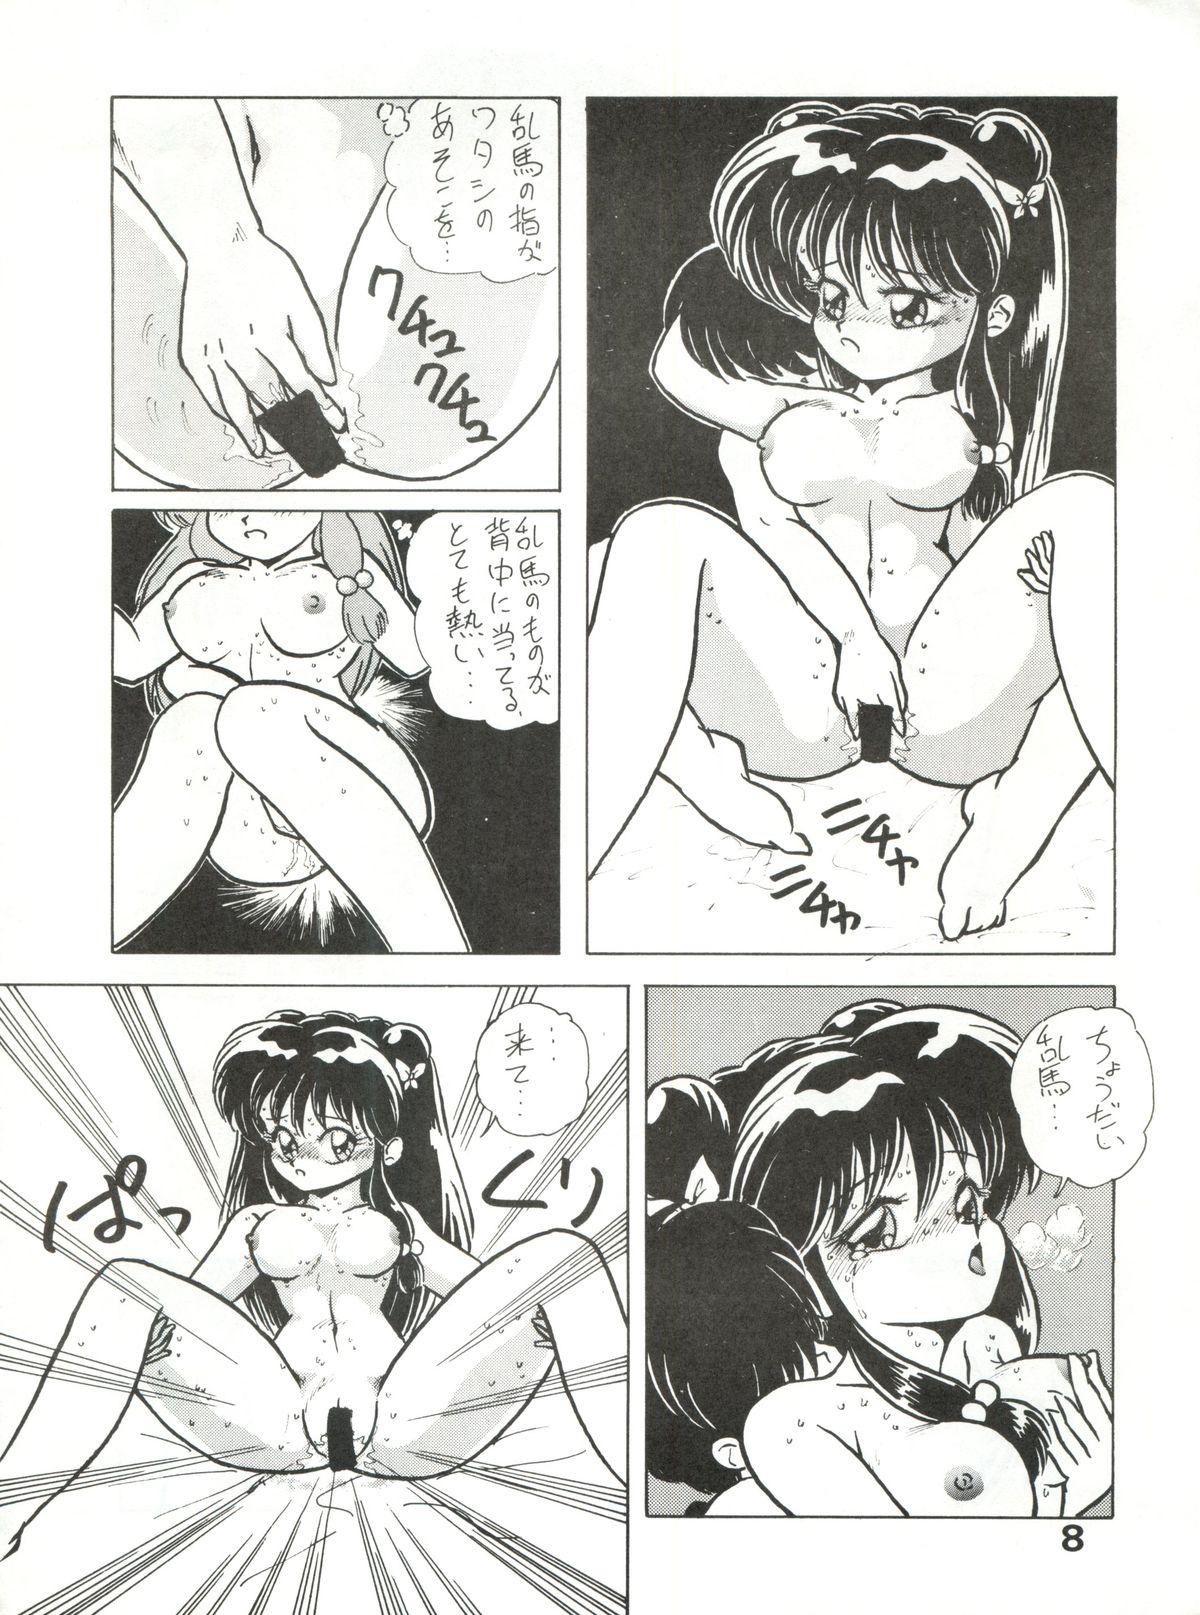 Casado Zubizu Bat - Sailor moon Ranma 12 3x3 eyes Ethnic - Page 8